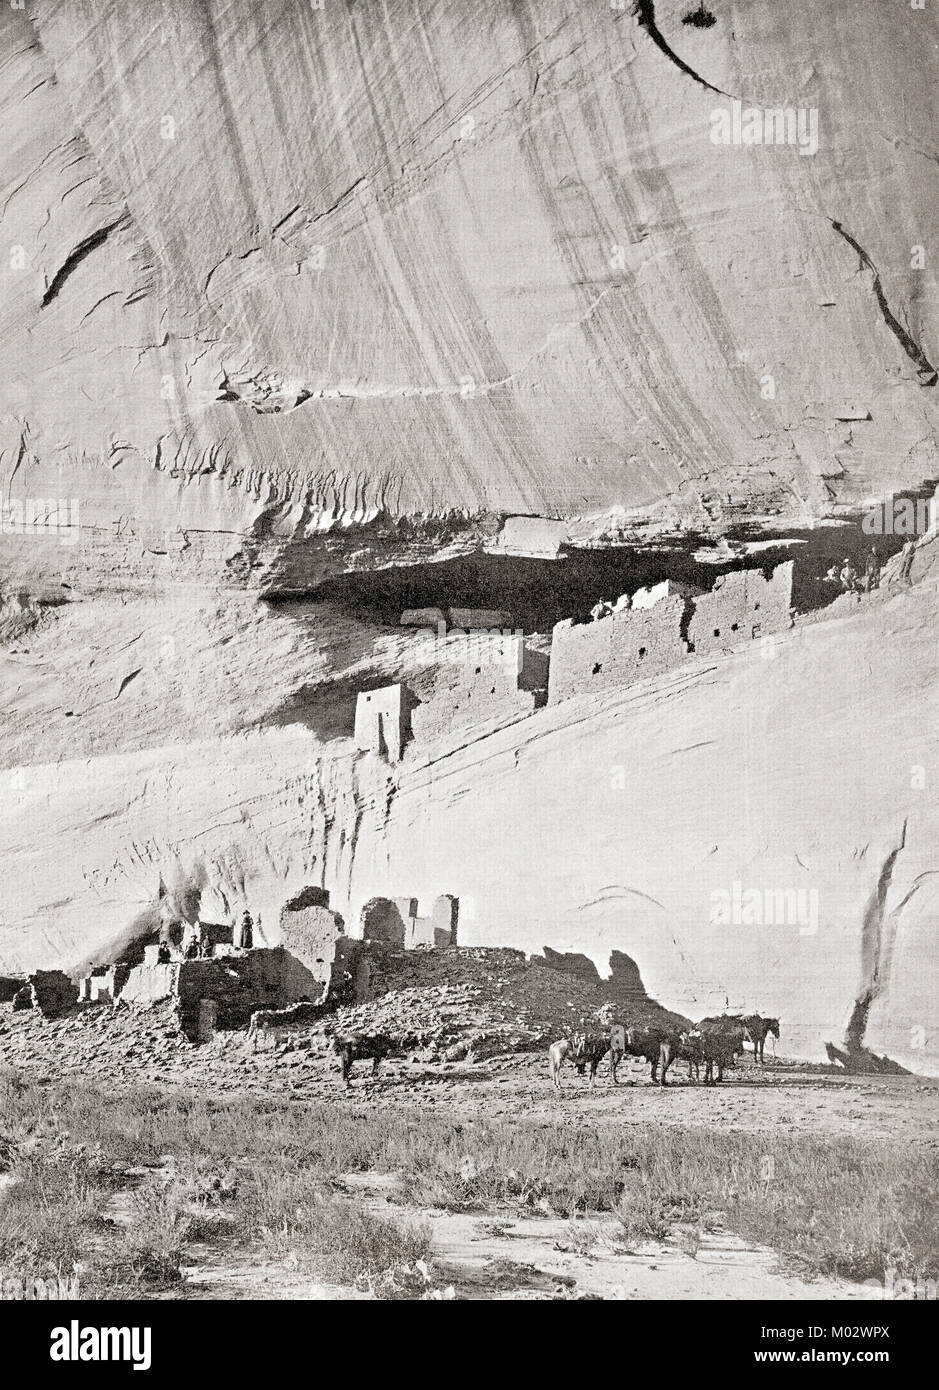 Les ruines de l'Cliff dwellings du peuple Navajo au Canyon de Chelly, Arizona, États-Unis d'Amérique, vu ici c. 1911. Des merveilles du monde, publié c.1911. Banque D'Images